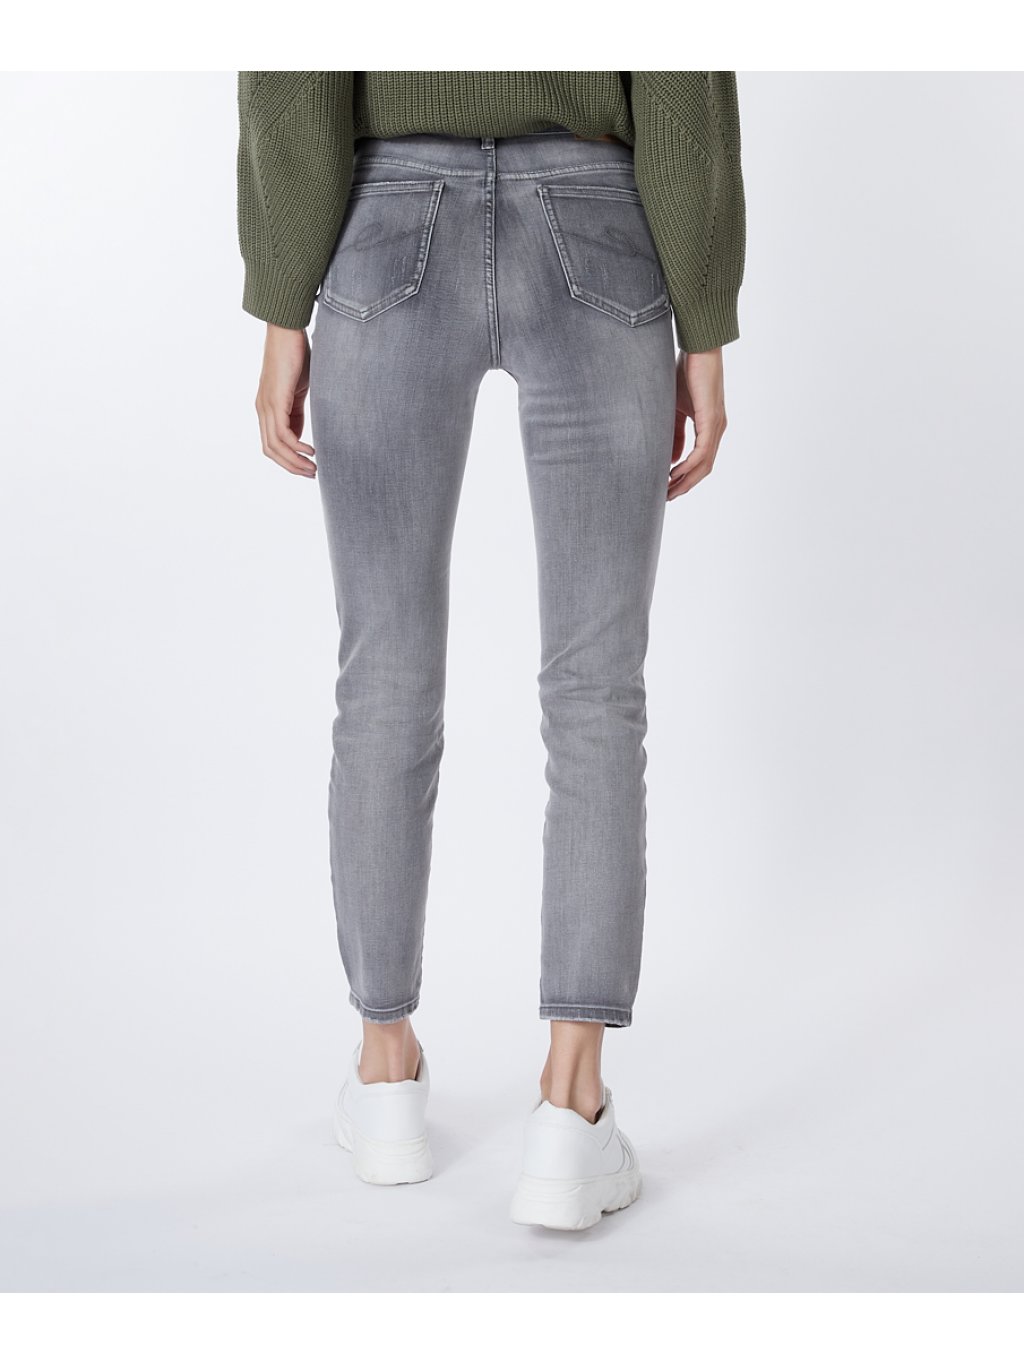 Kalhoty Esqualo 12504 světle šedé džíny do pasu